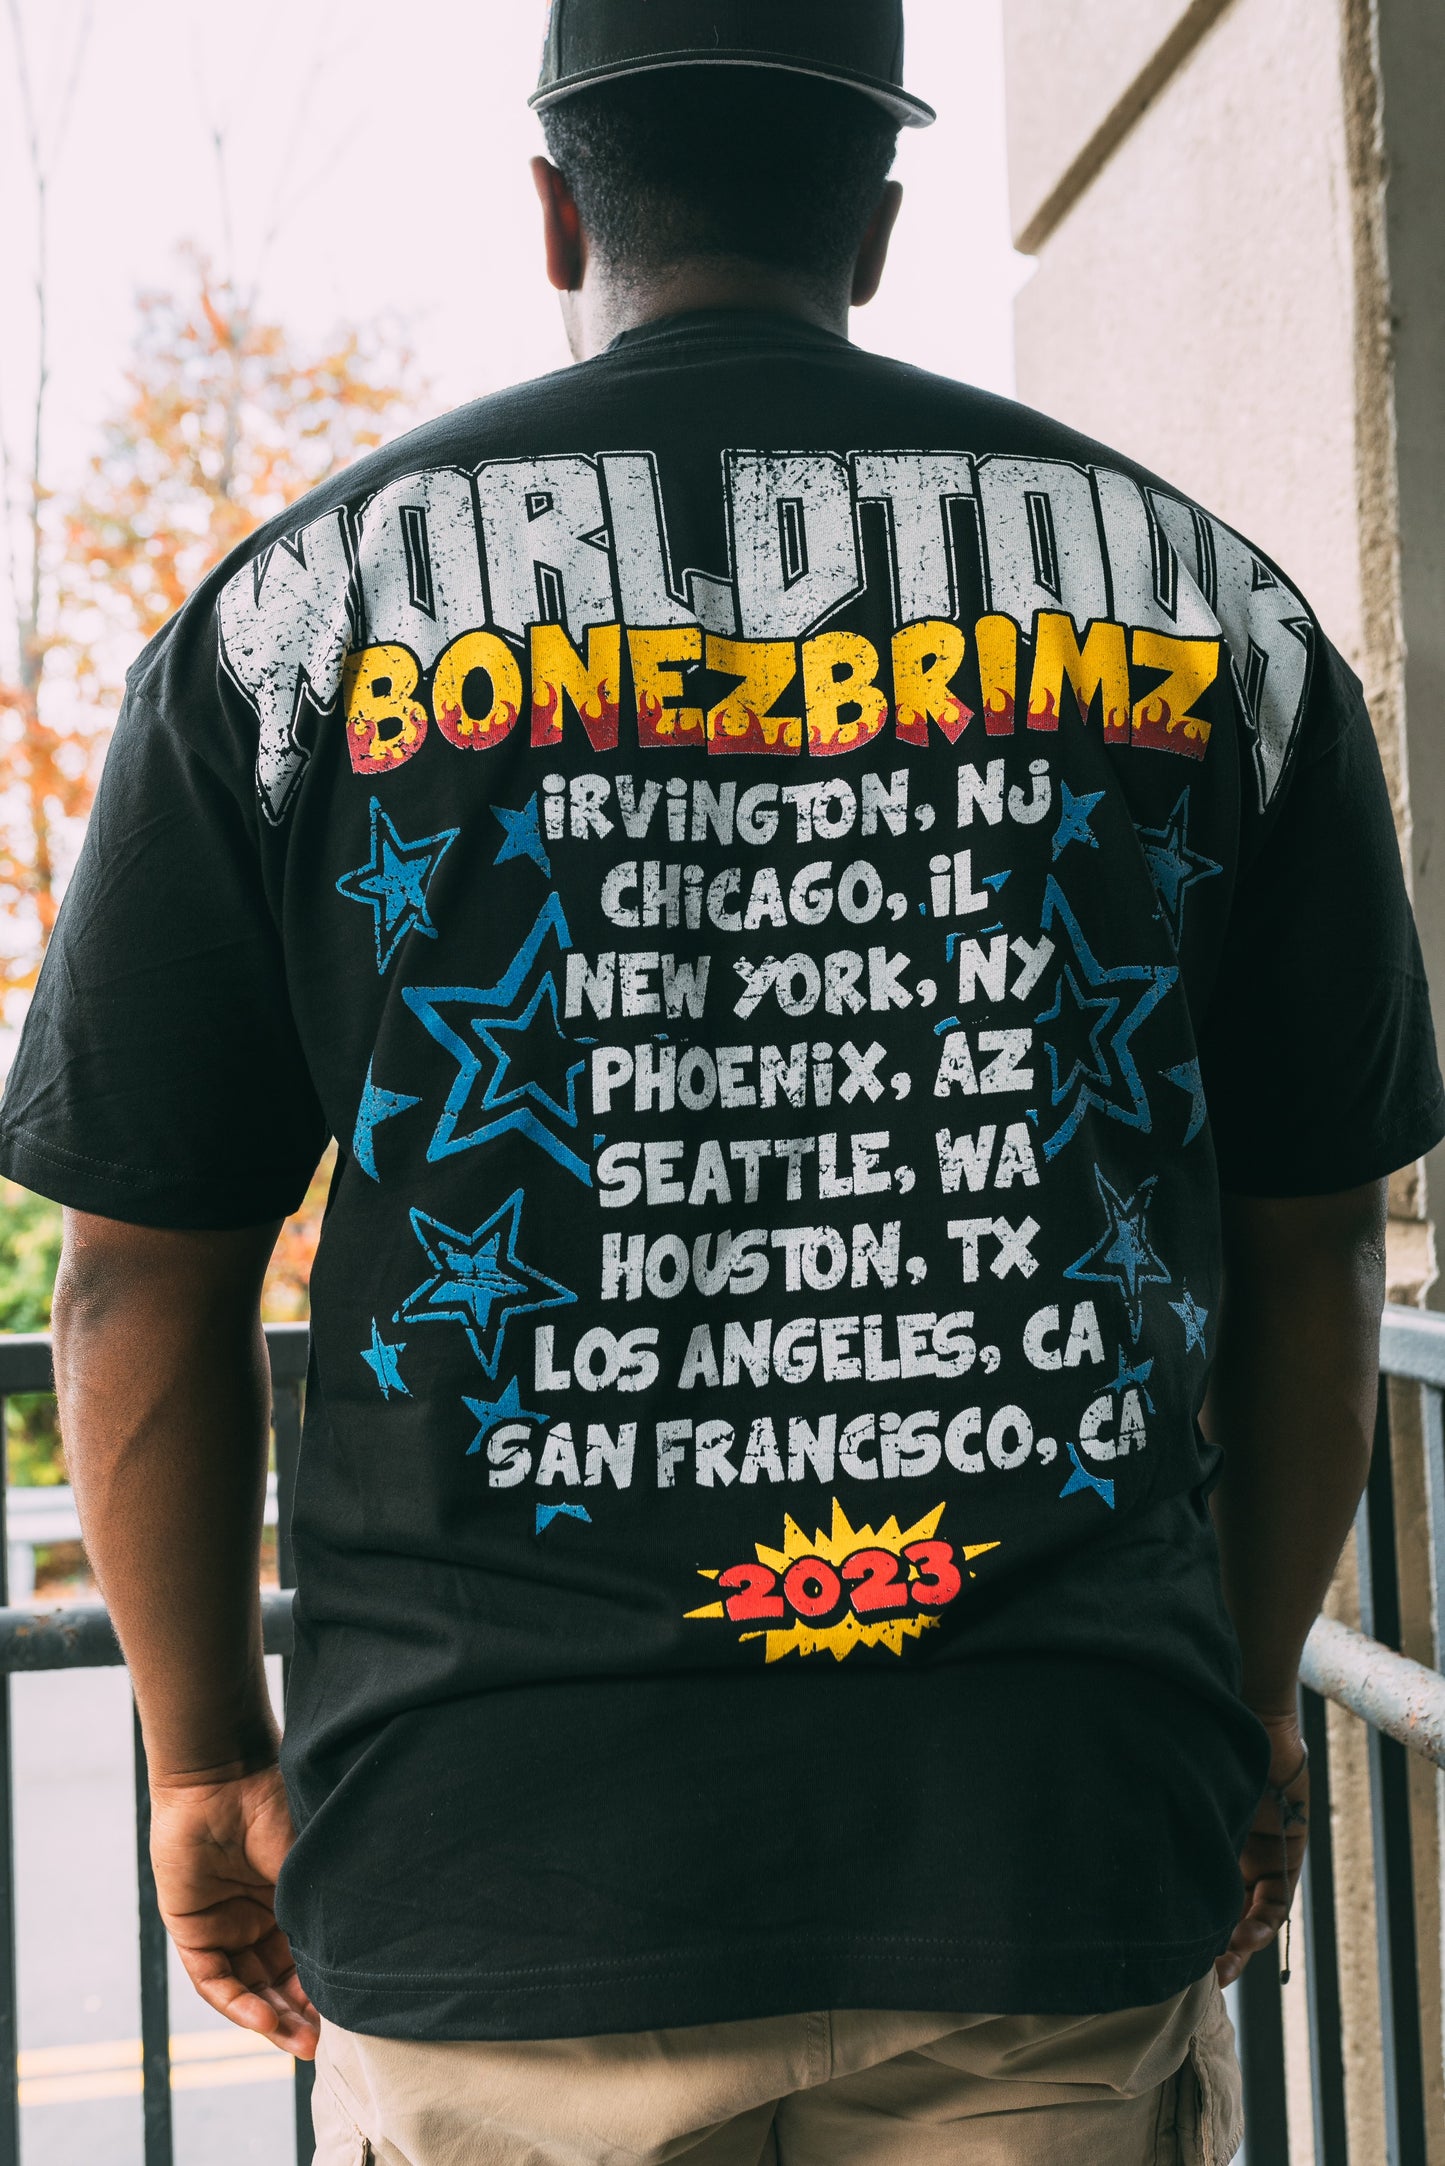 BonezBrimz “WORLD TOUR” Tee